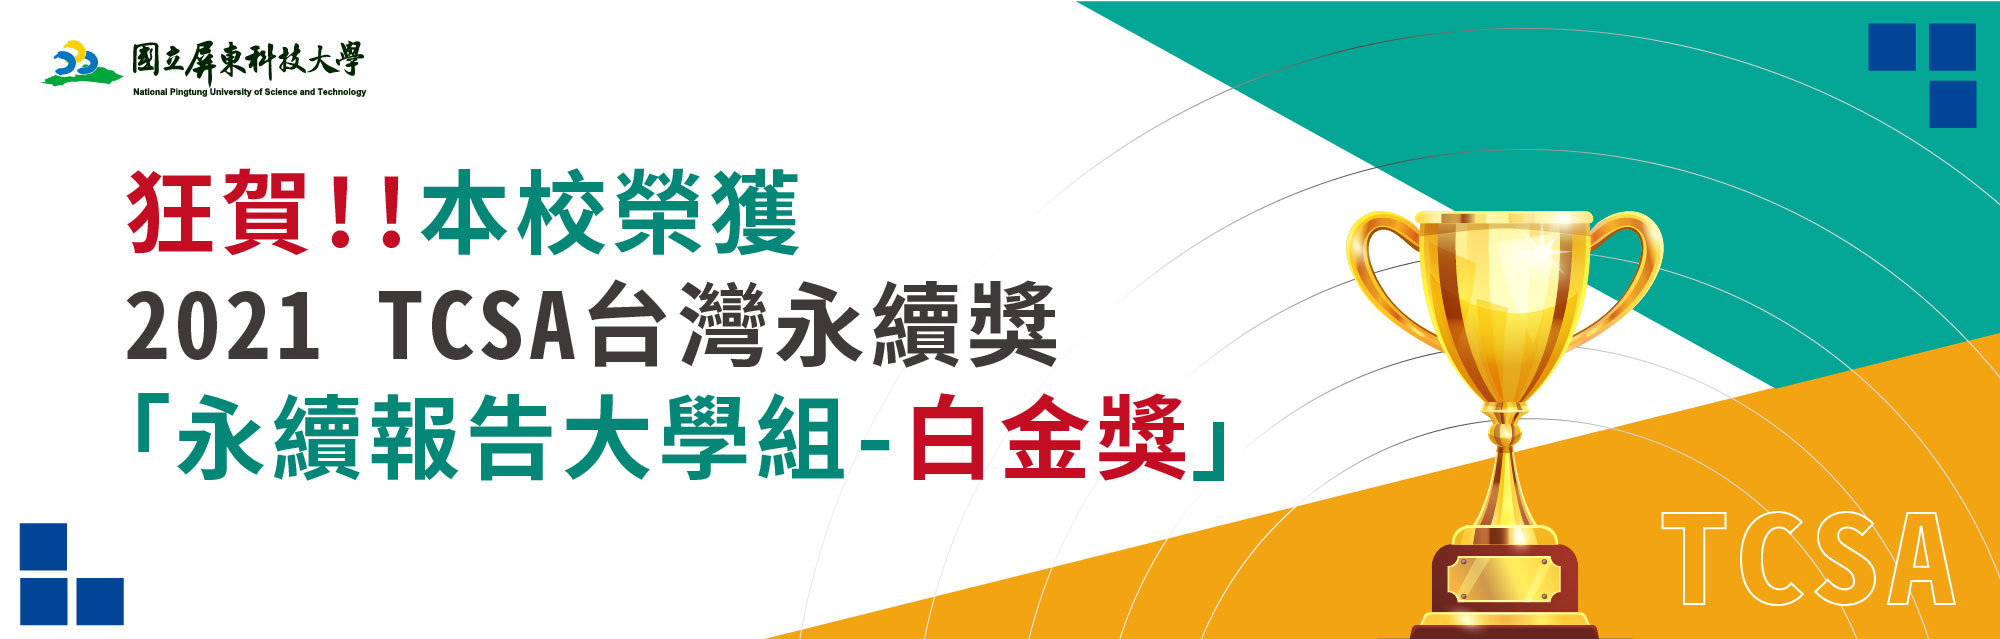 本校榮獲2021 TCSA台灣永續獎-永續報告大學組-白金獎